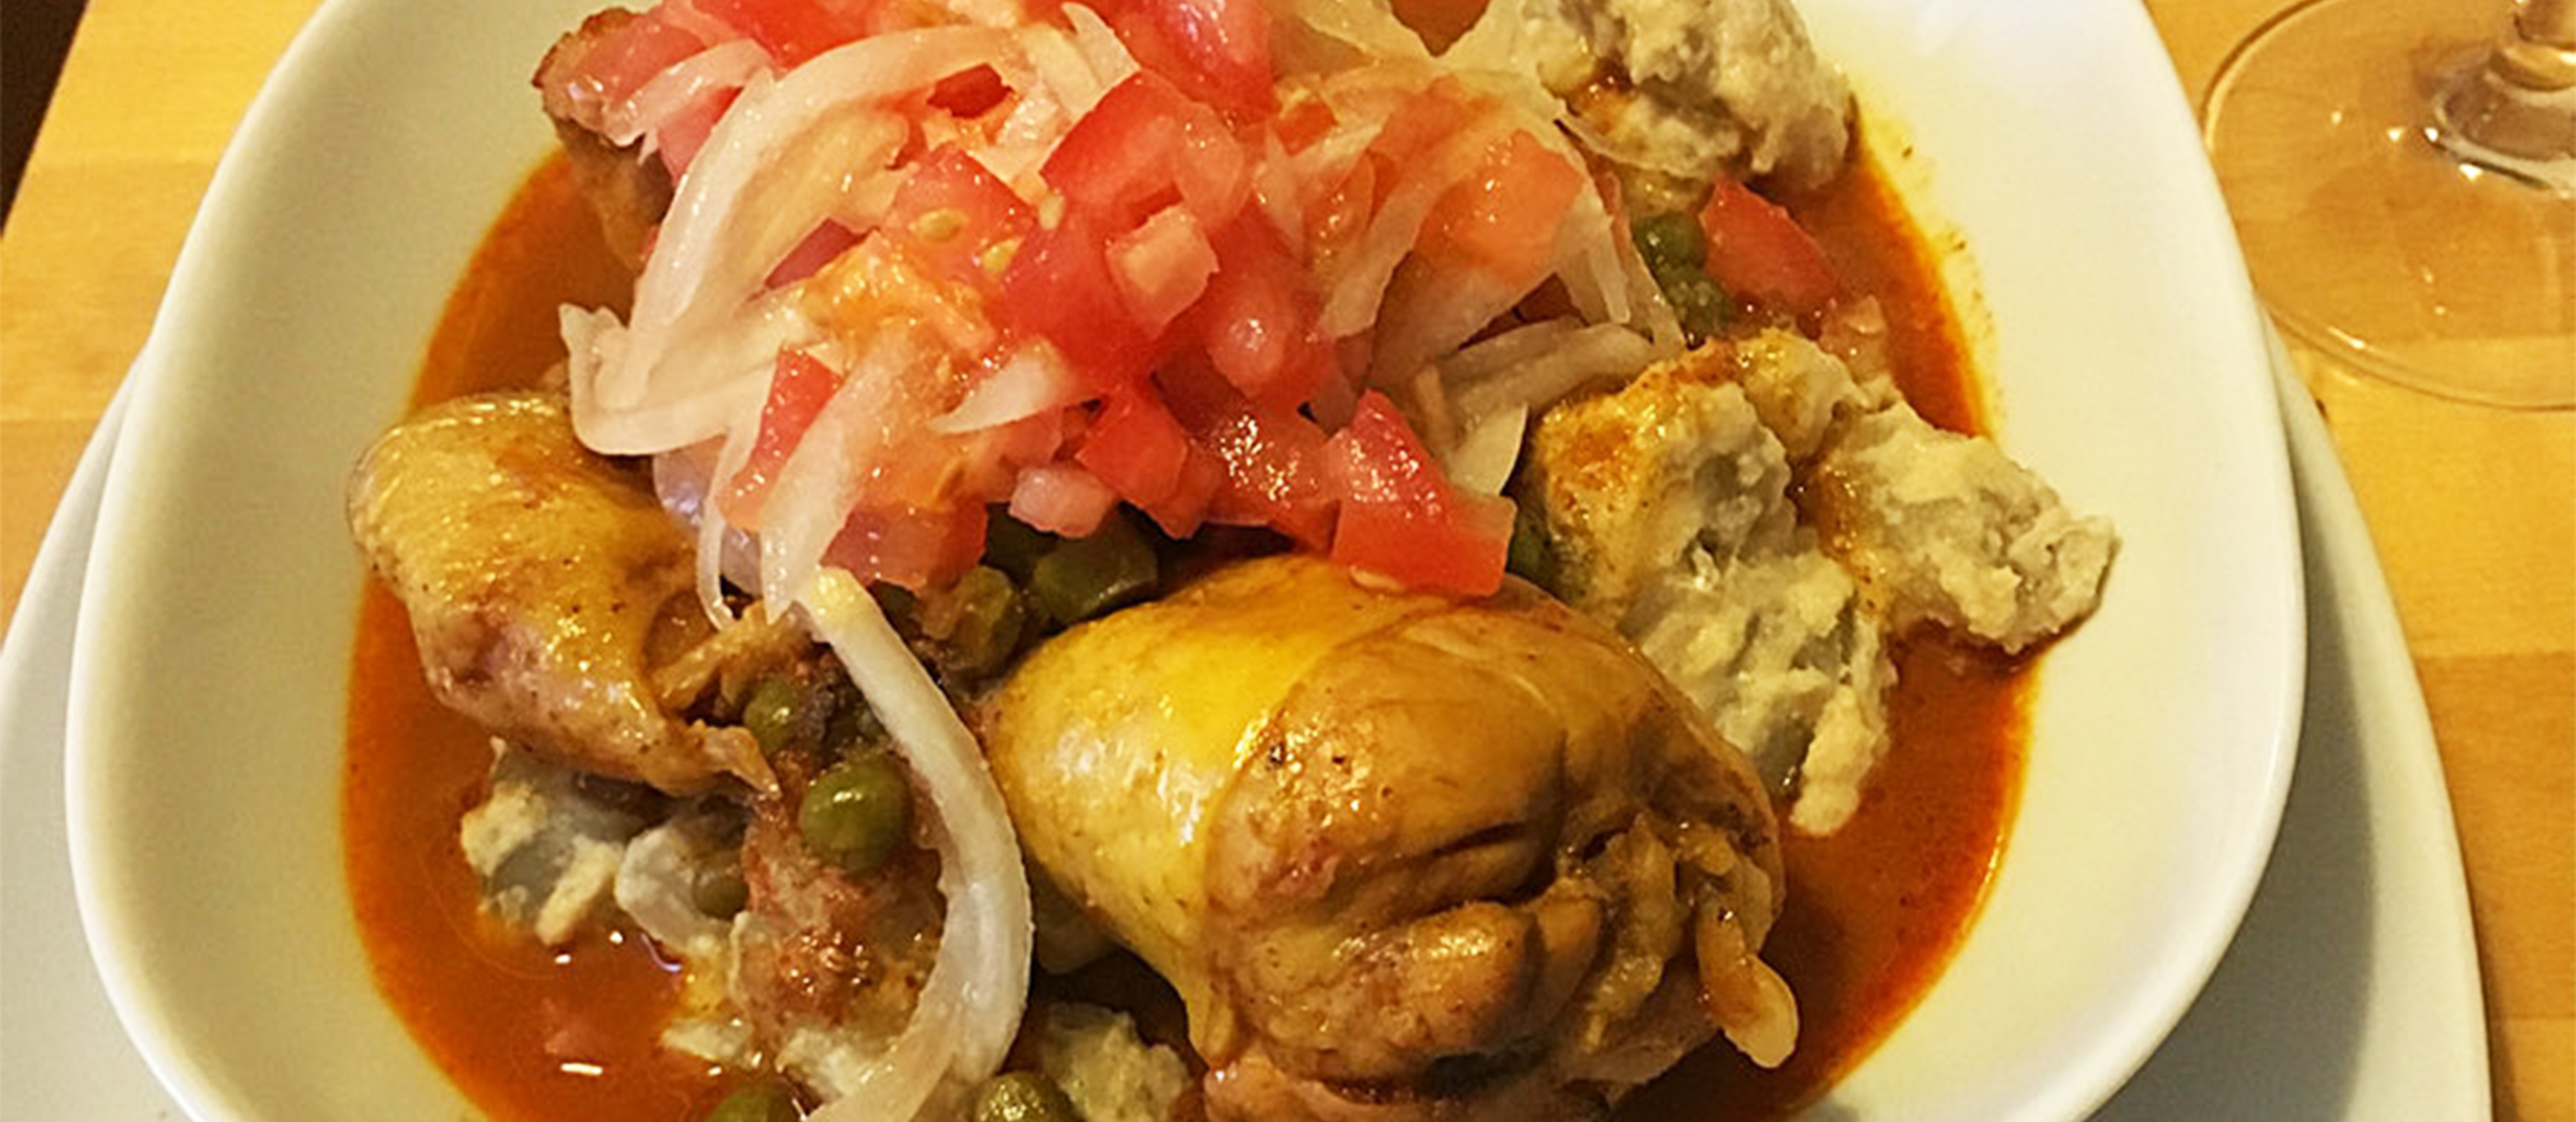 Sajta de Pollo | Traditional Chicken Dish From La Paz Department, Bolivia